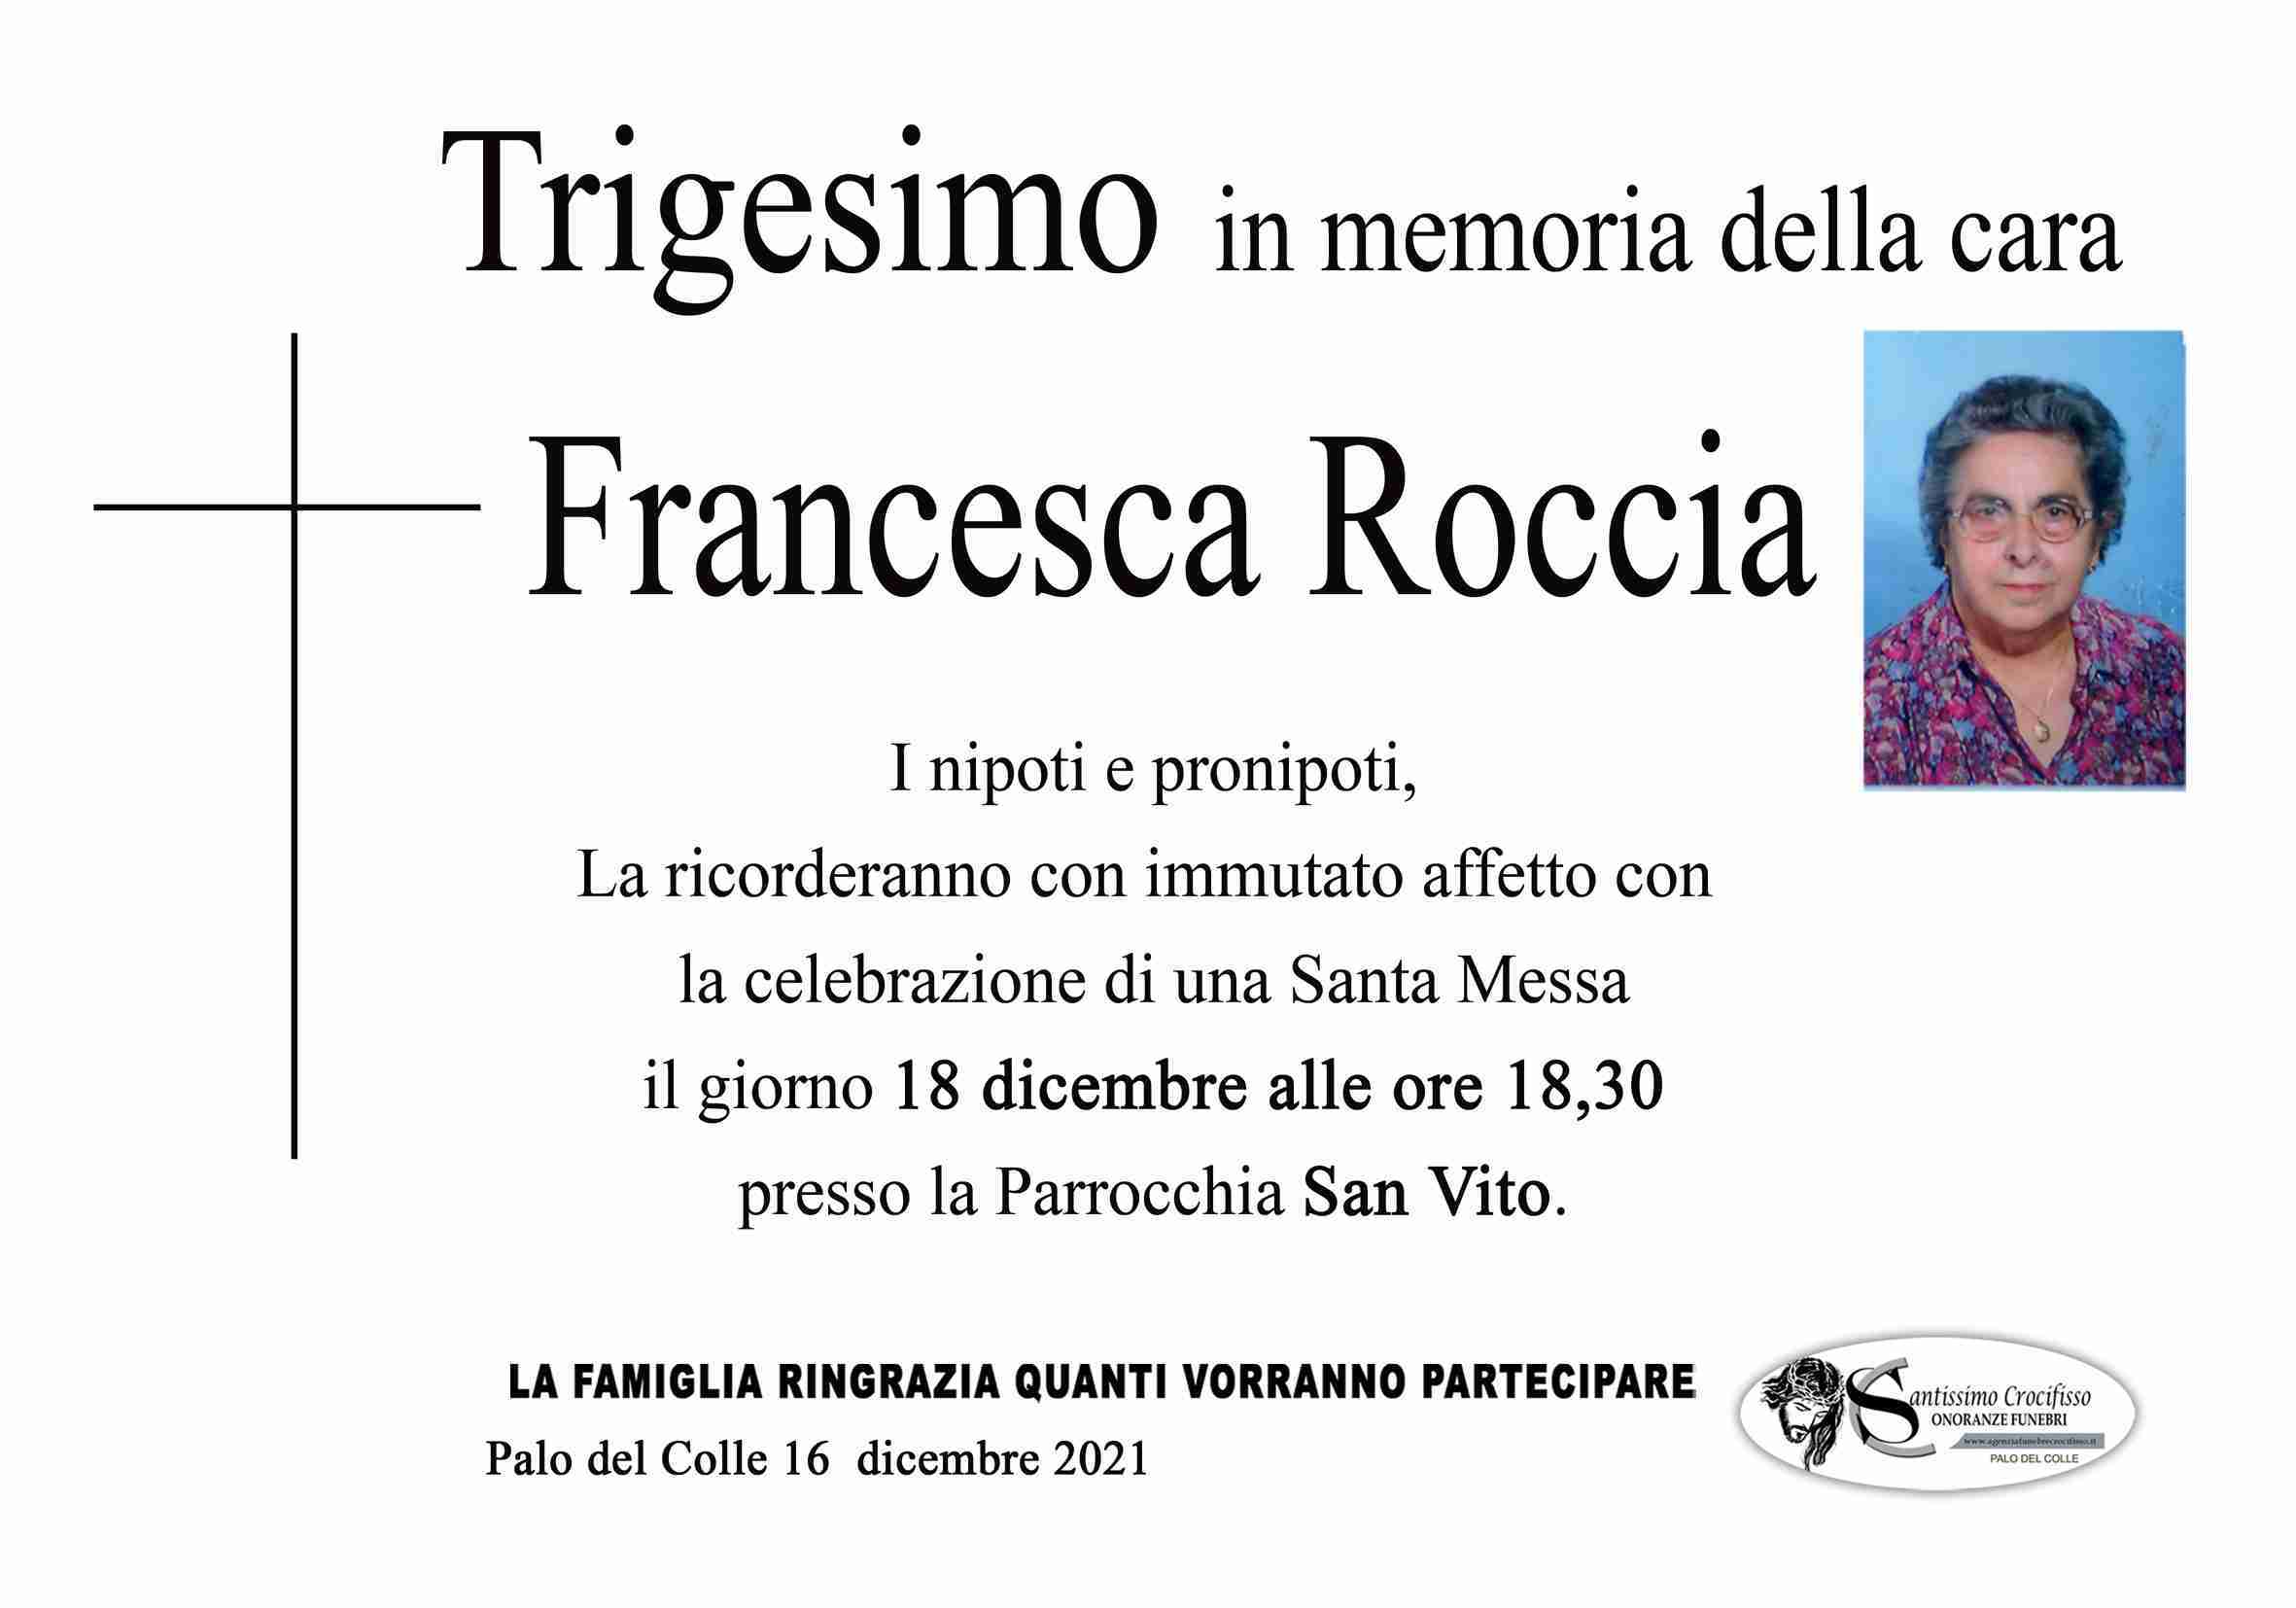 Francesca Roccia